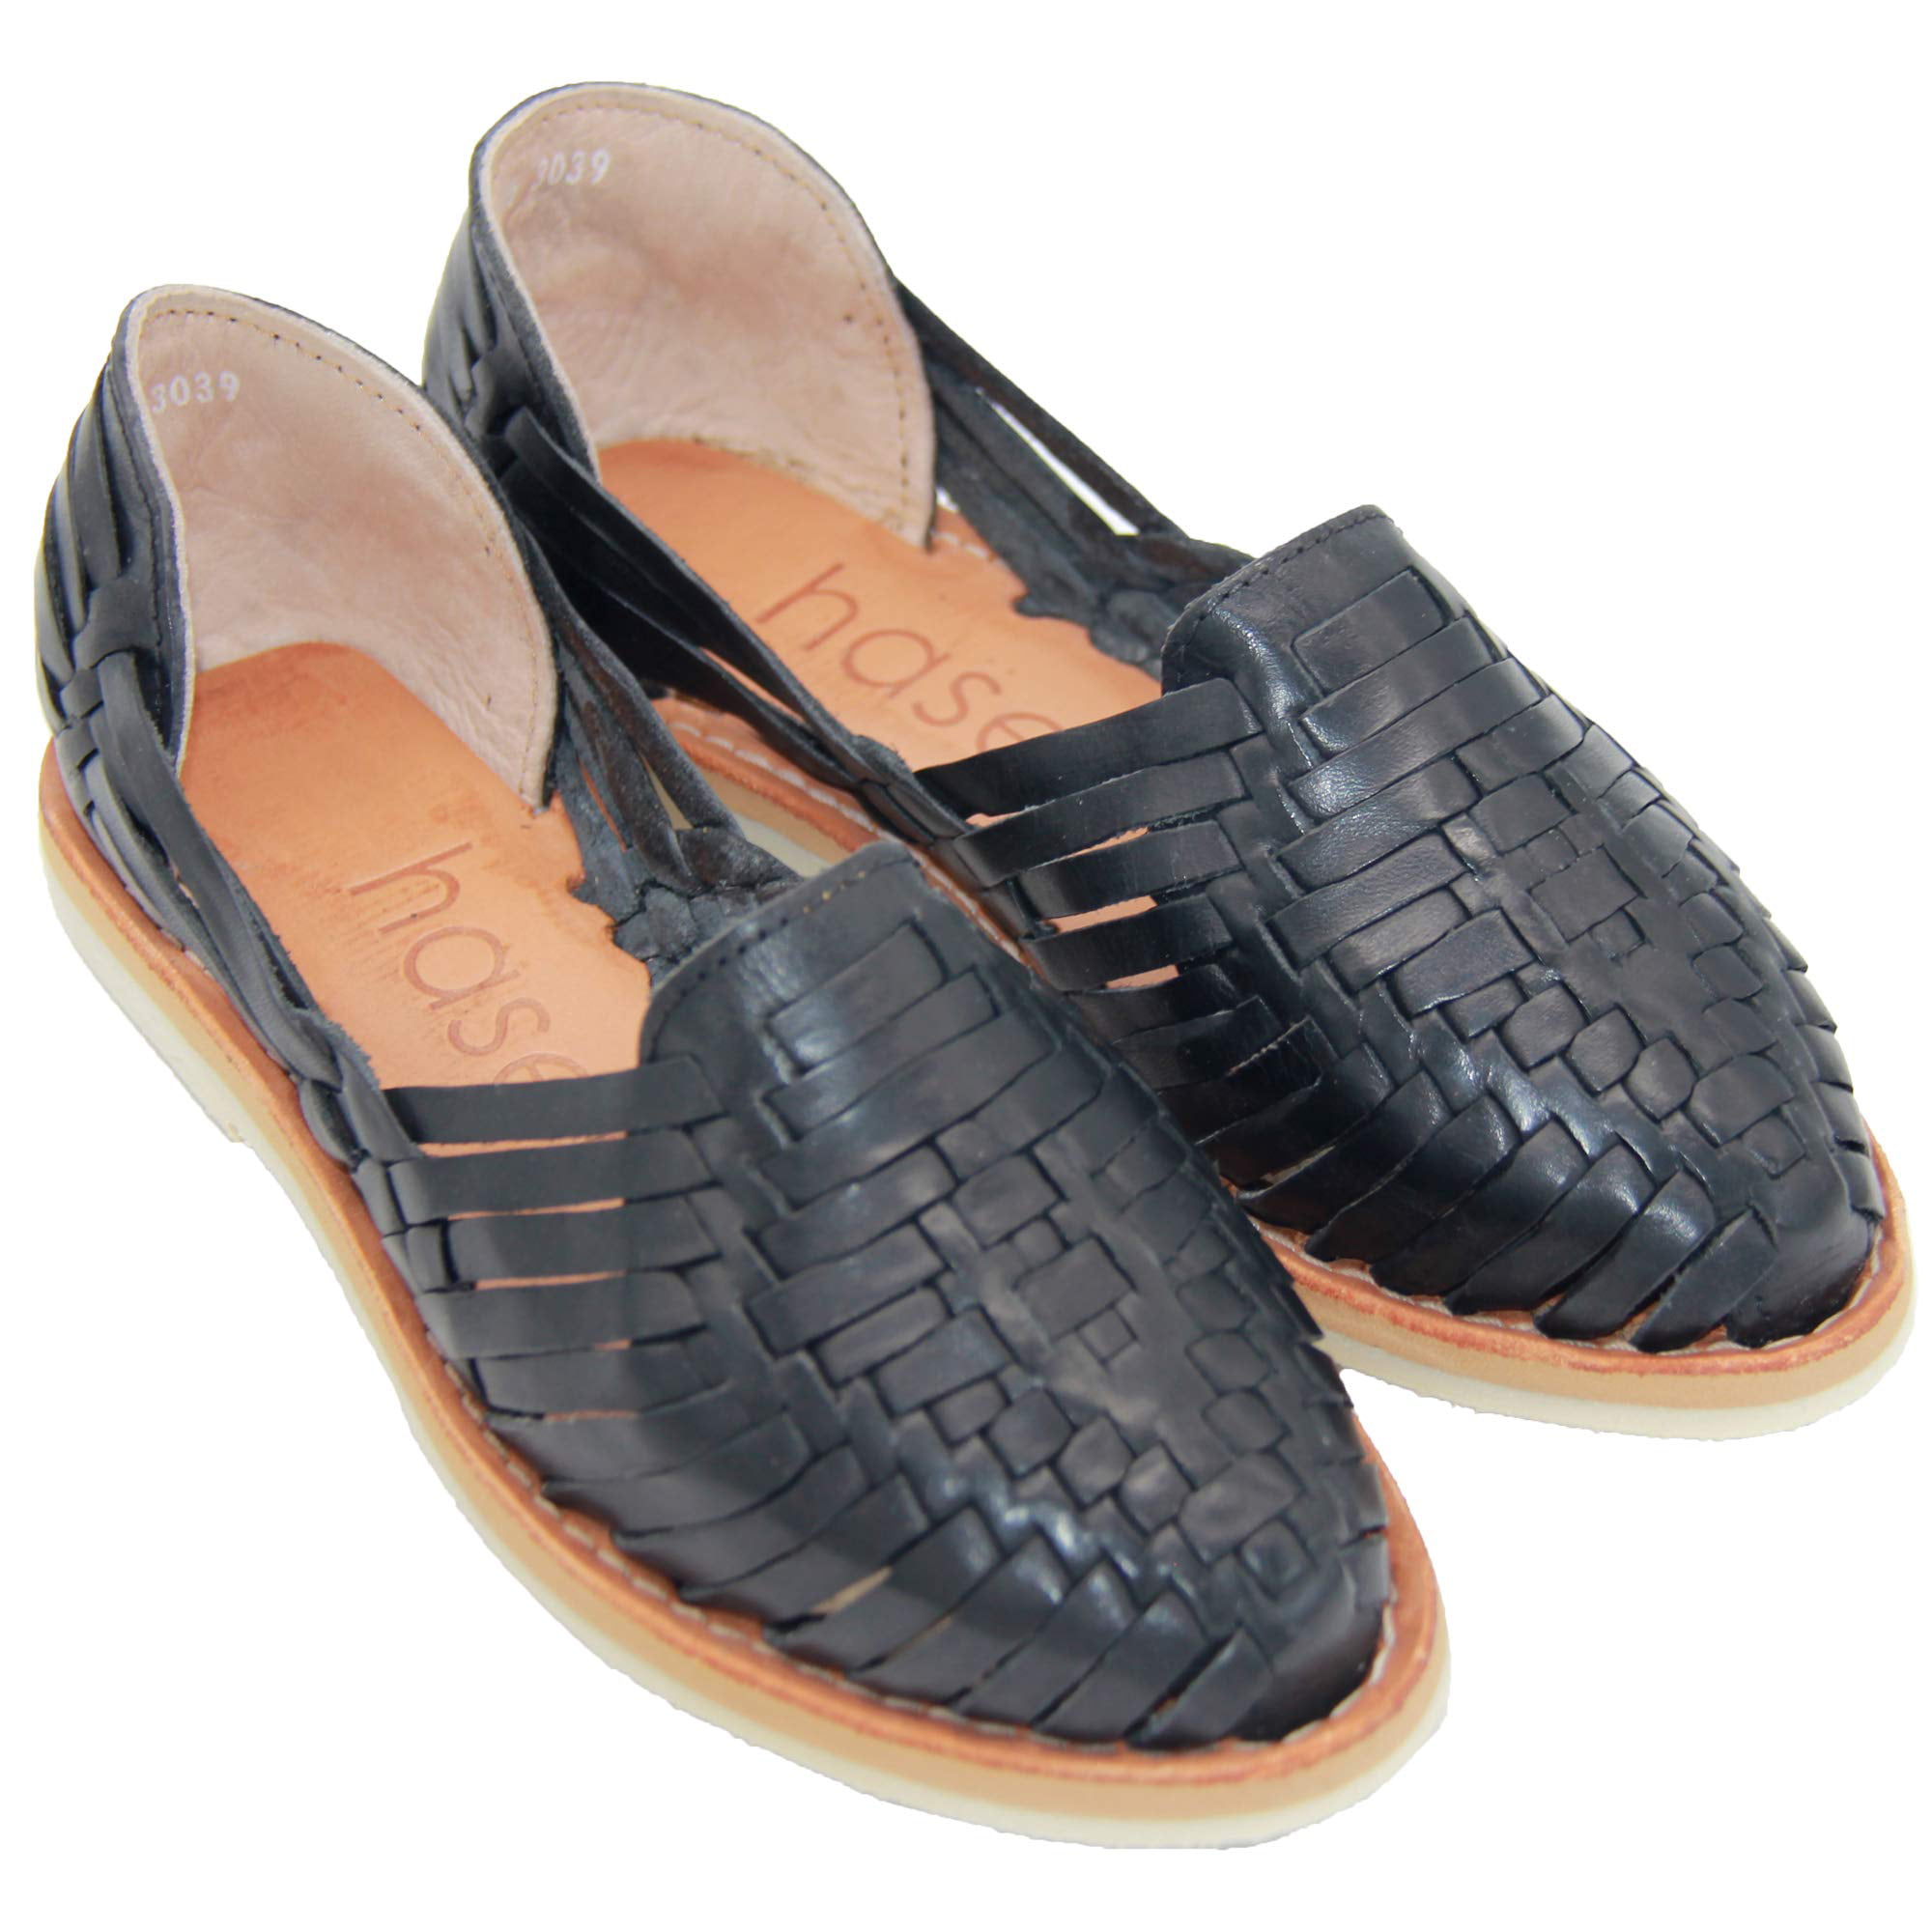 womens leather huarache shoes